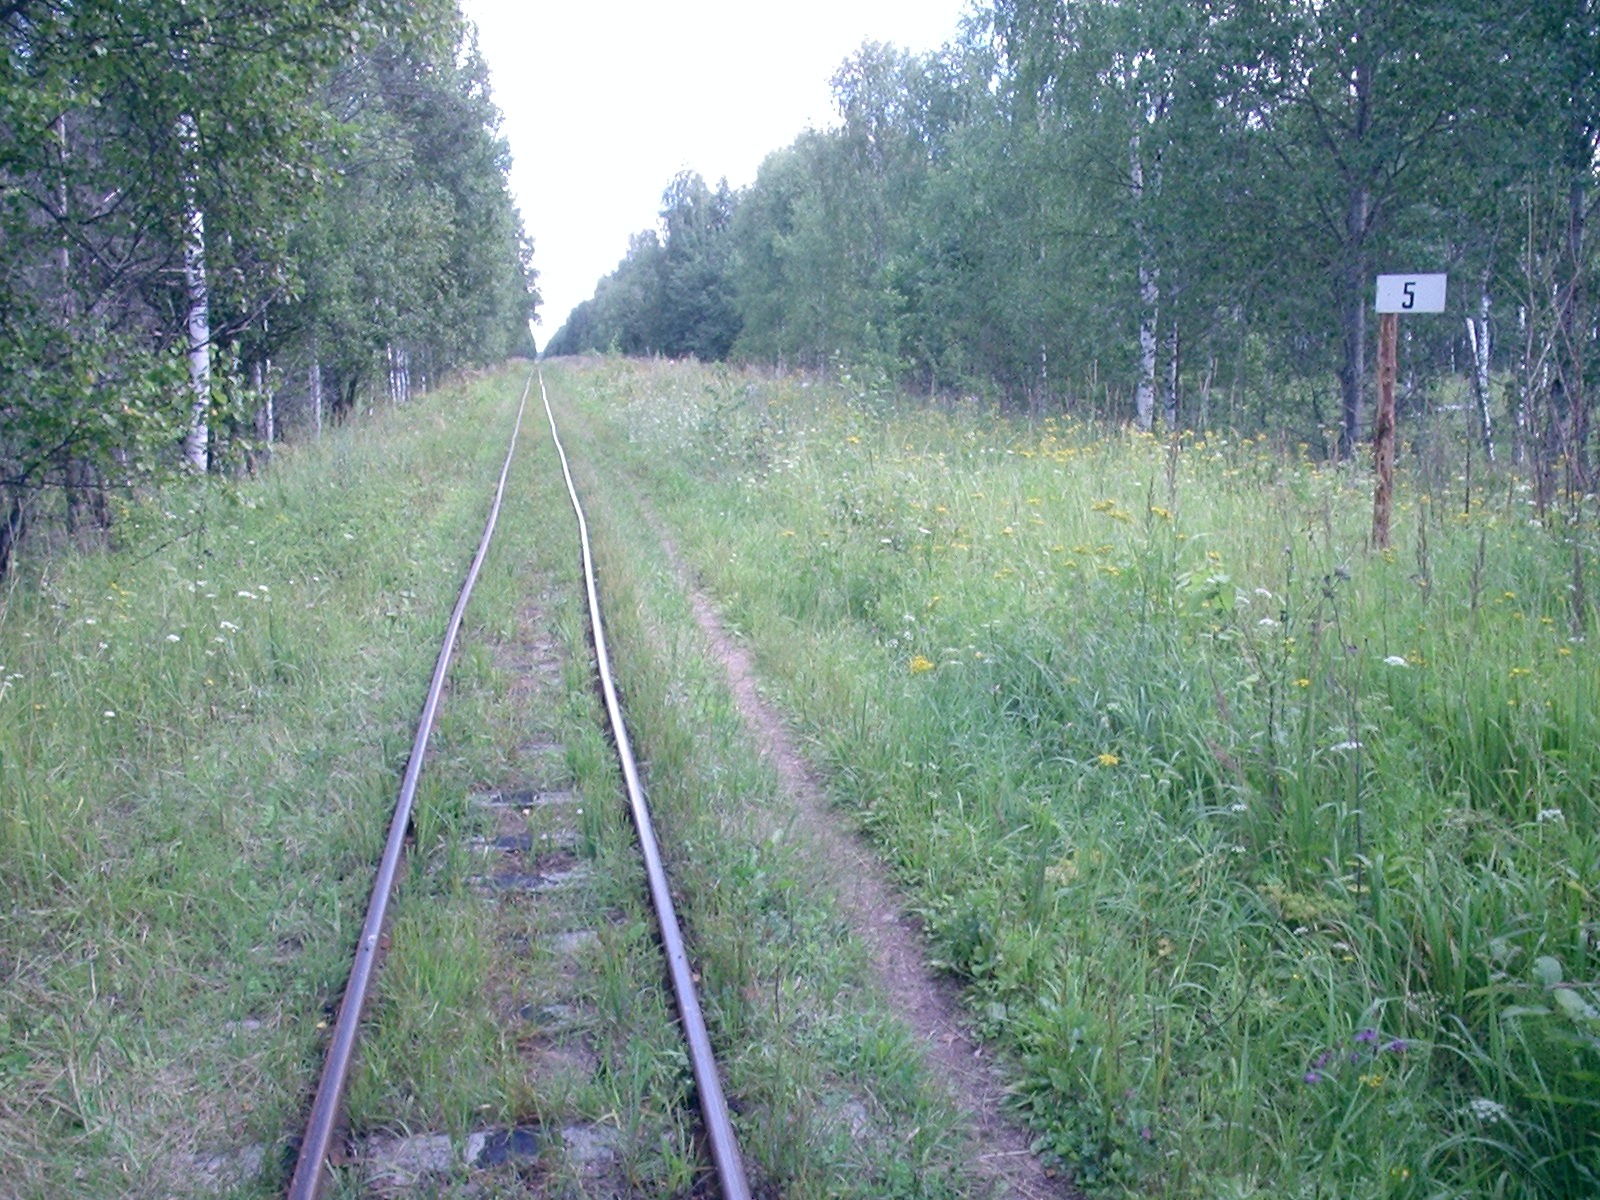 Узкоколейная железная дорога Васильевского предприятия промышленного железнодорожного транспорта  — фотографии, сделанные в 2005 году (часть 12)